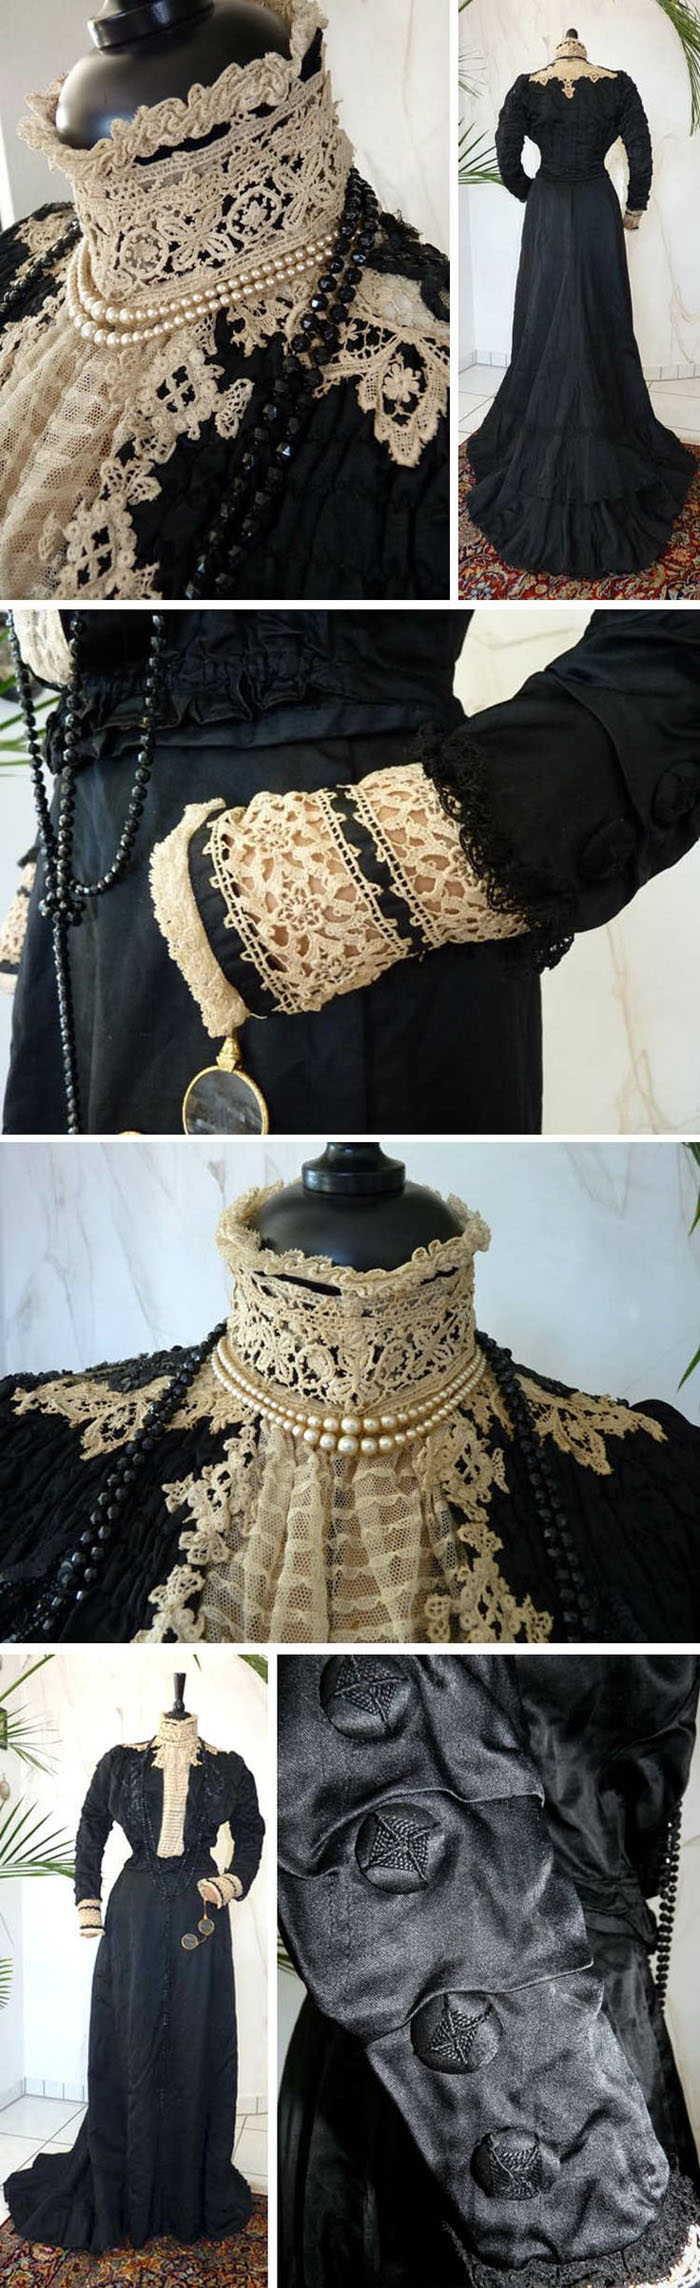 Великолепная вышивка, нежнейшее кружево, шелковые ленты: прекрасные детали антикварных платьев, фото № 27